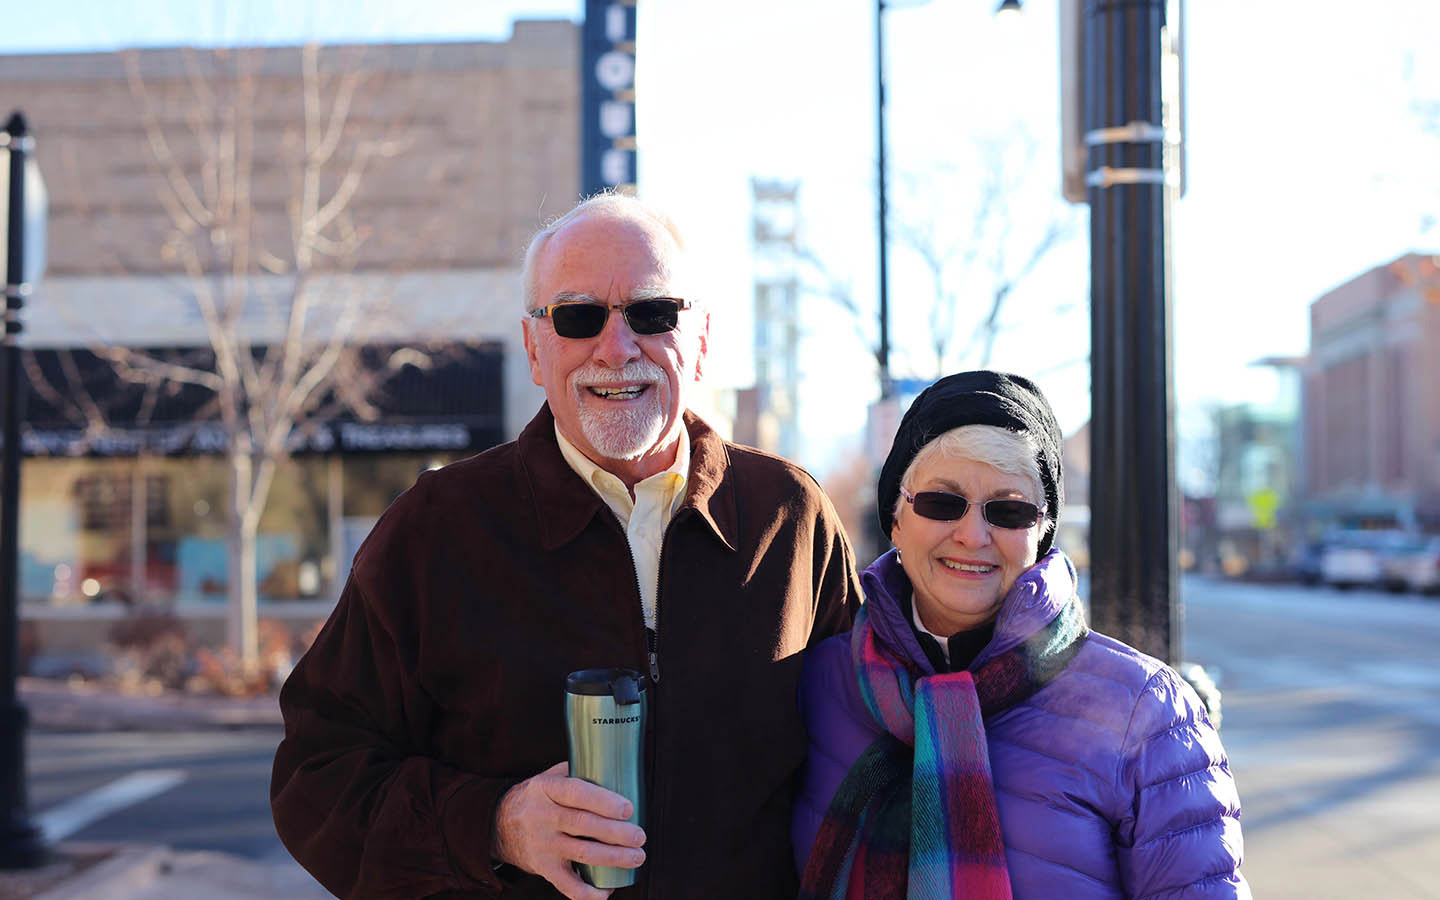 Cochlear brugeren Tom og hans kone Brenda poserer til et foto på gaden